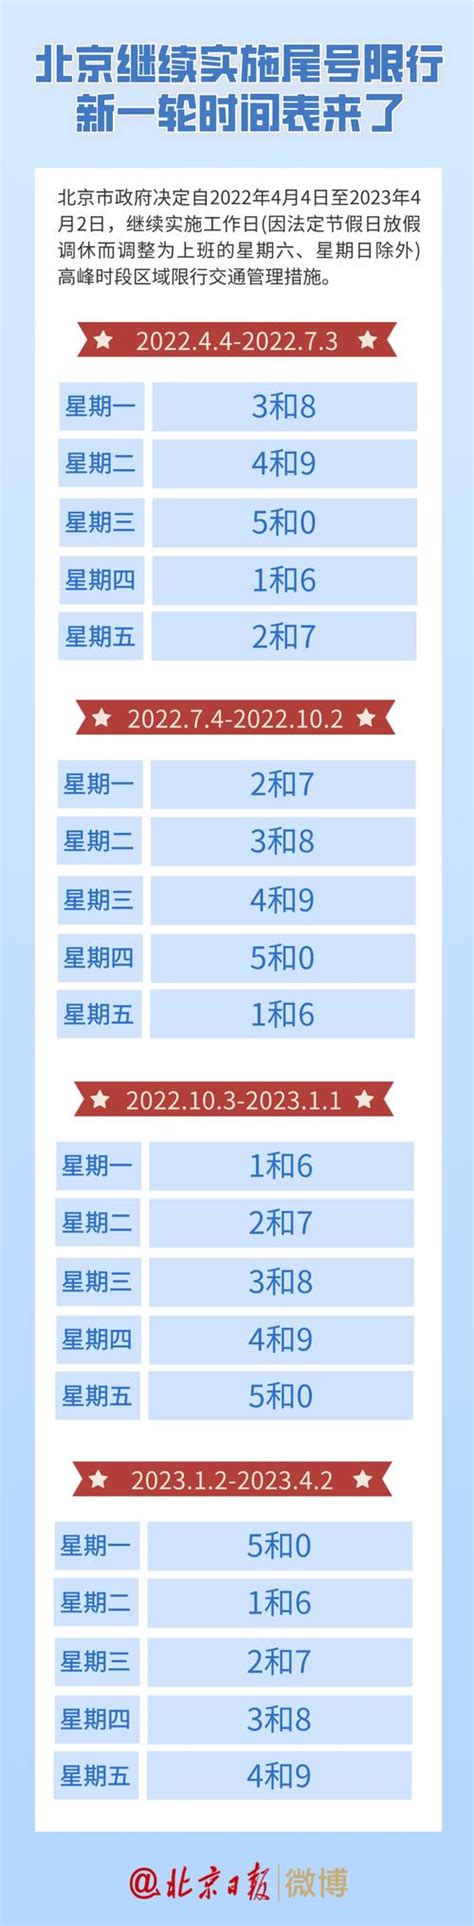 上海银行信用卡周六周日饿了么满30元随机立减2-5元 | 真人范儿-羊毛优惠